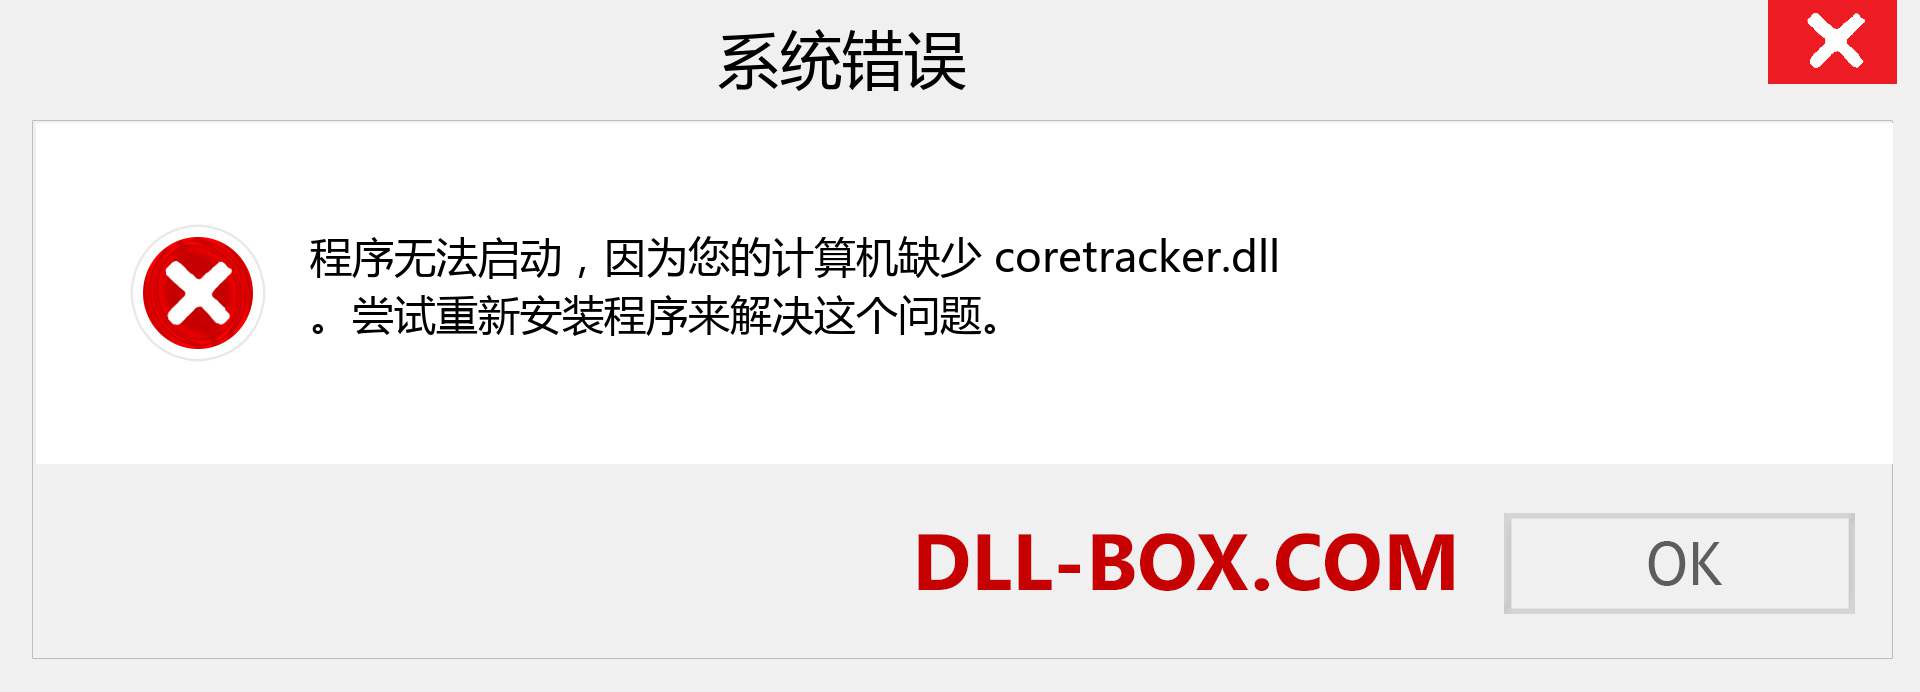 coretracker.dll 文件丢失？。 适用于 Windows 7、8、10 的下载 - 修复 Windows、照片、图像上的 coretracker dll 丢失错误